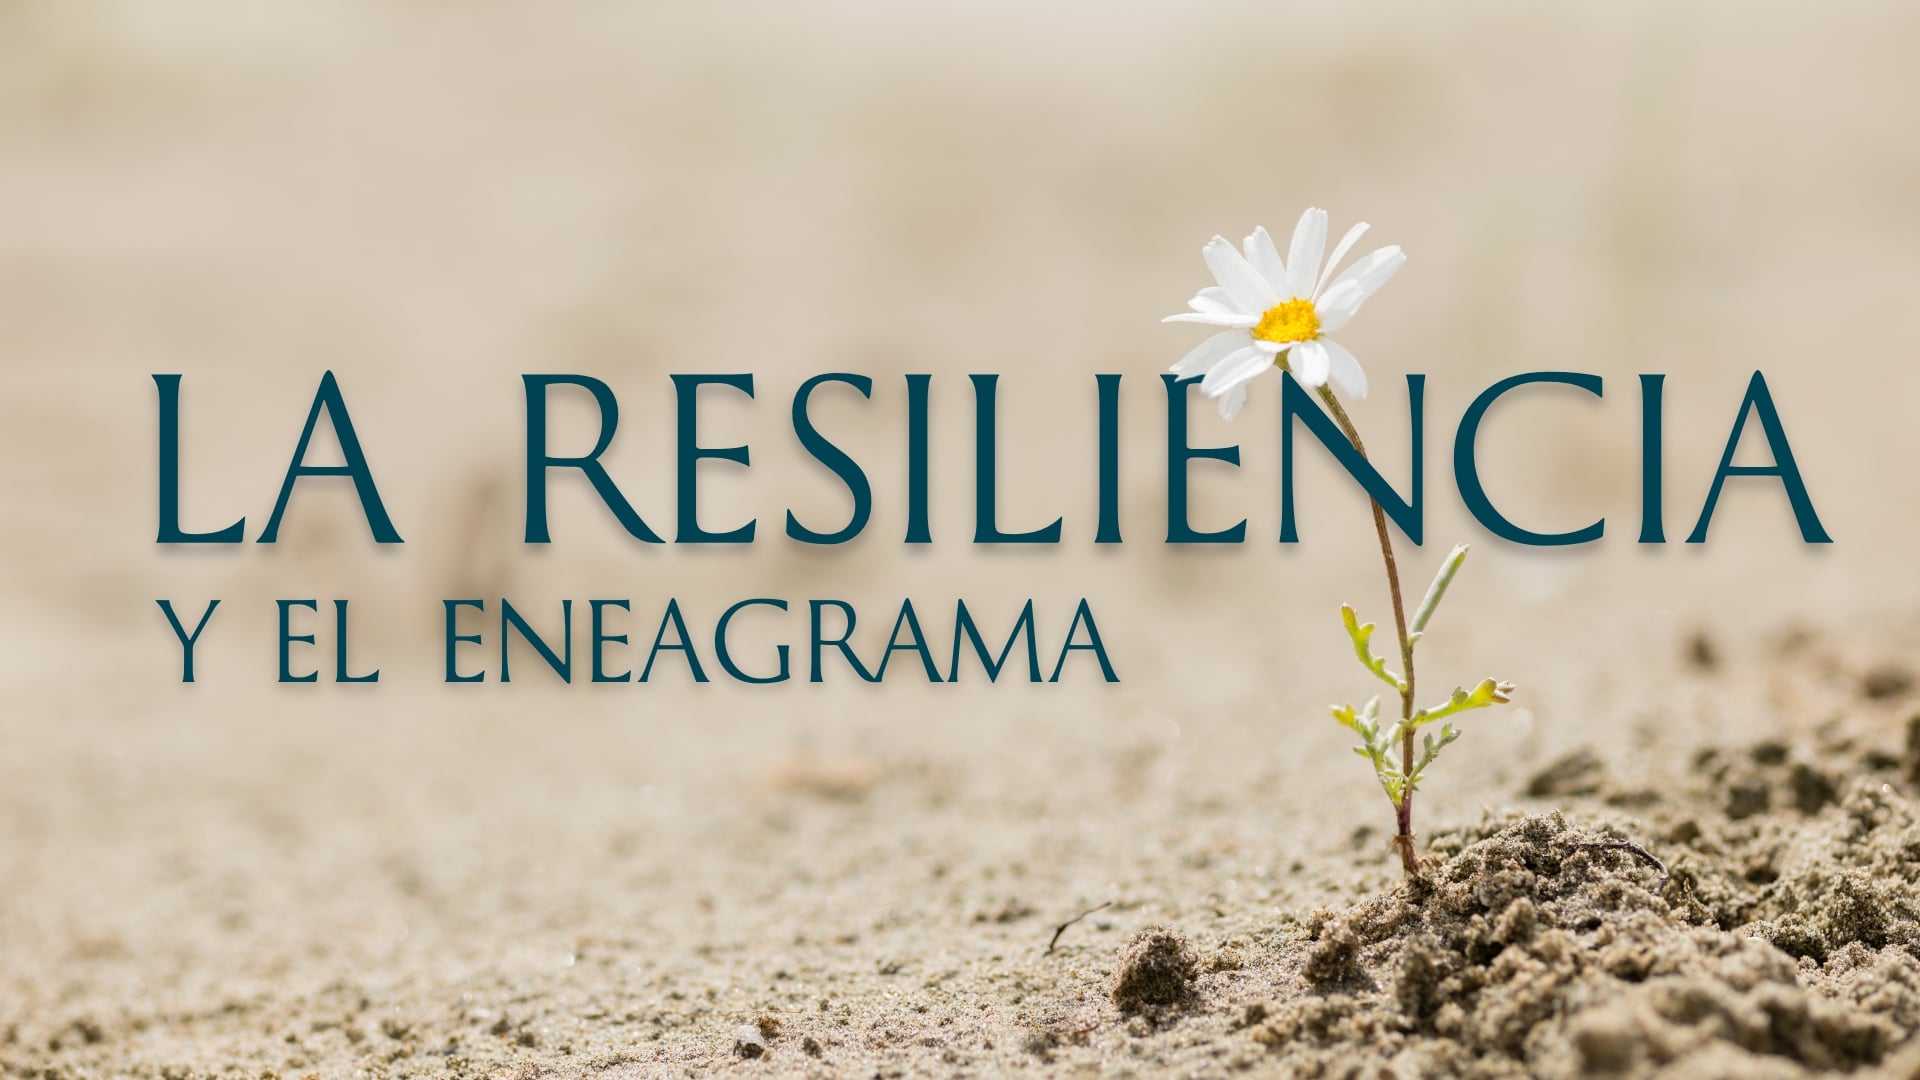 La resiliencia y el eneagrama